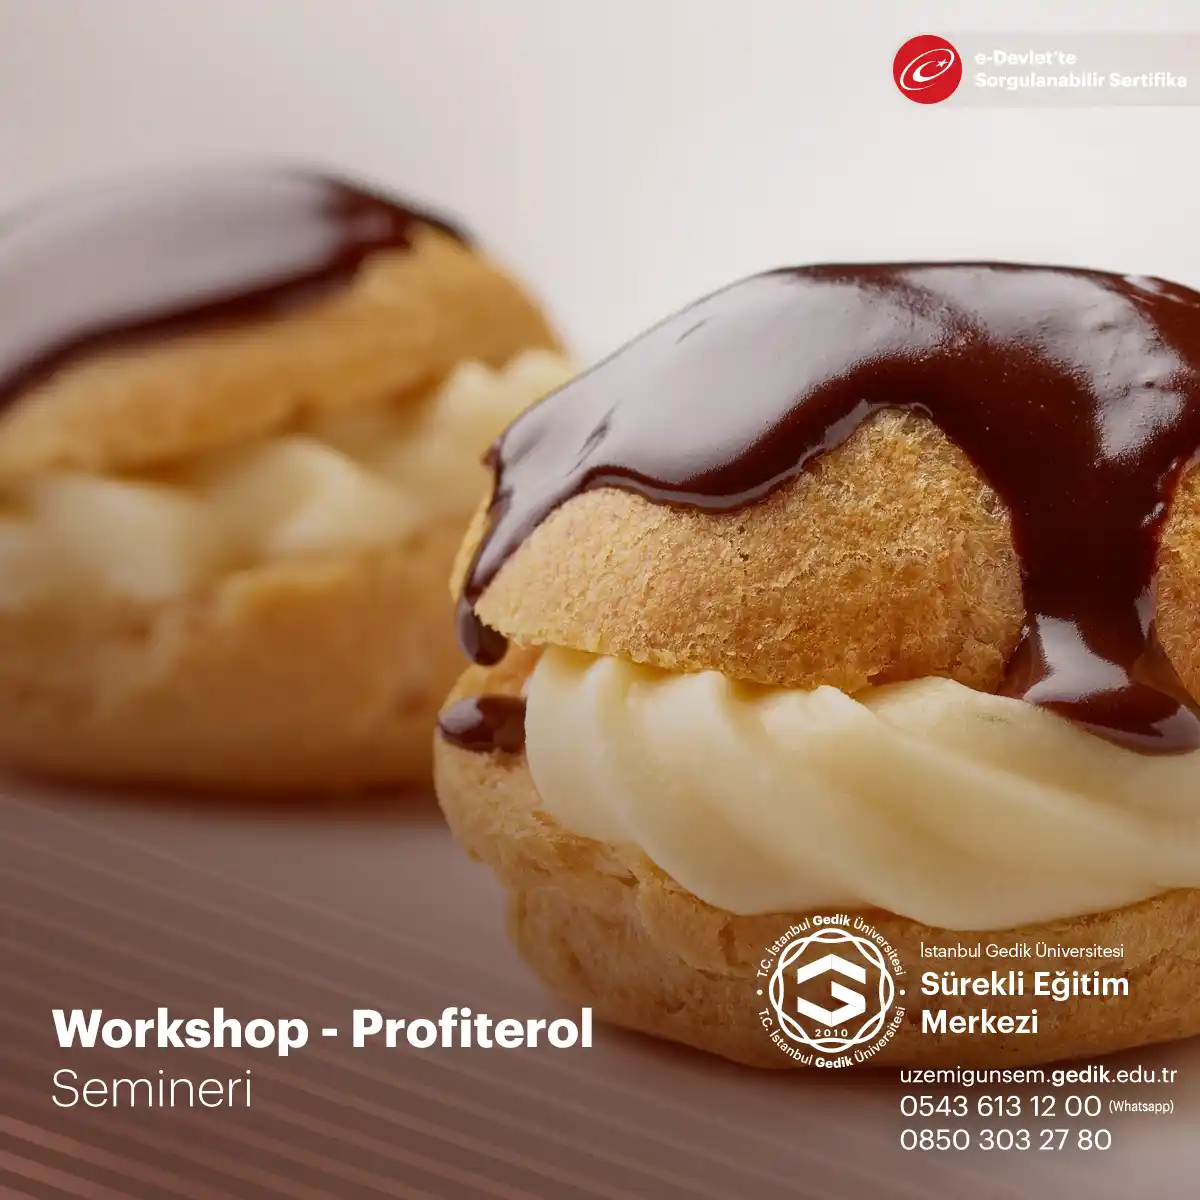 Profiterol yapımı workshop'u, tatlı severlerin bir araya gelerek, Fransız mutfağının ünlü tatlısı profiterolün nasıl yapıldığını öğrenmek için düzenlenen interaktif bir etkinliktir.